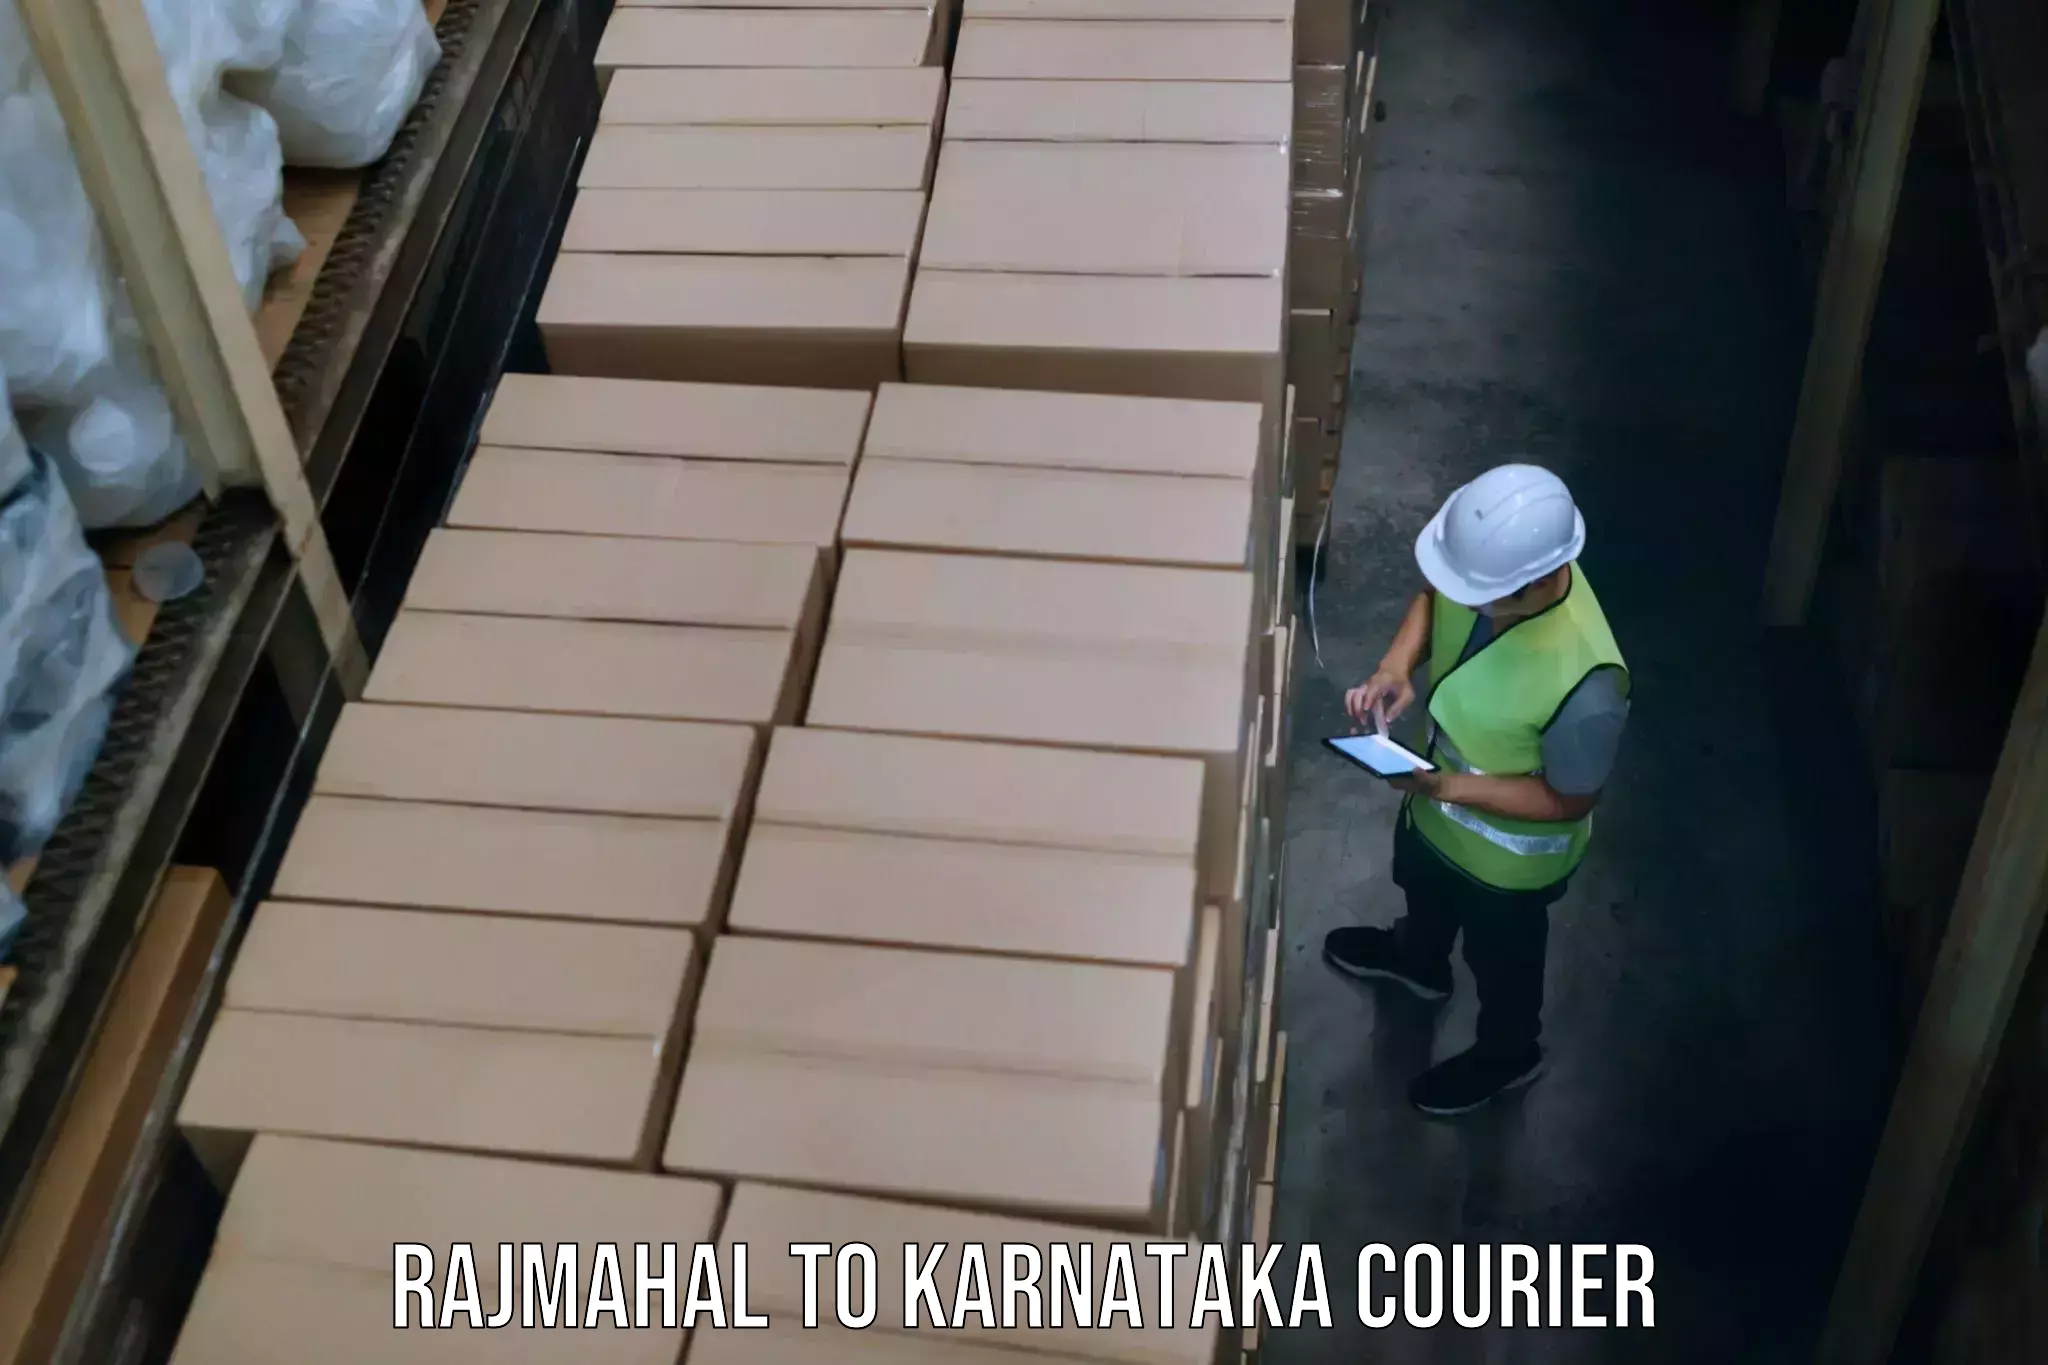 Excess baggage transport in Rajmahal to Karnataka